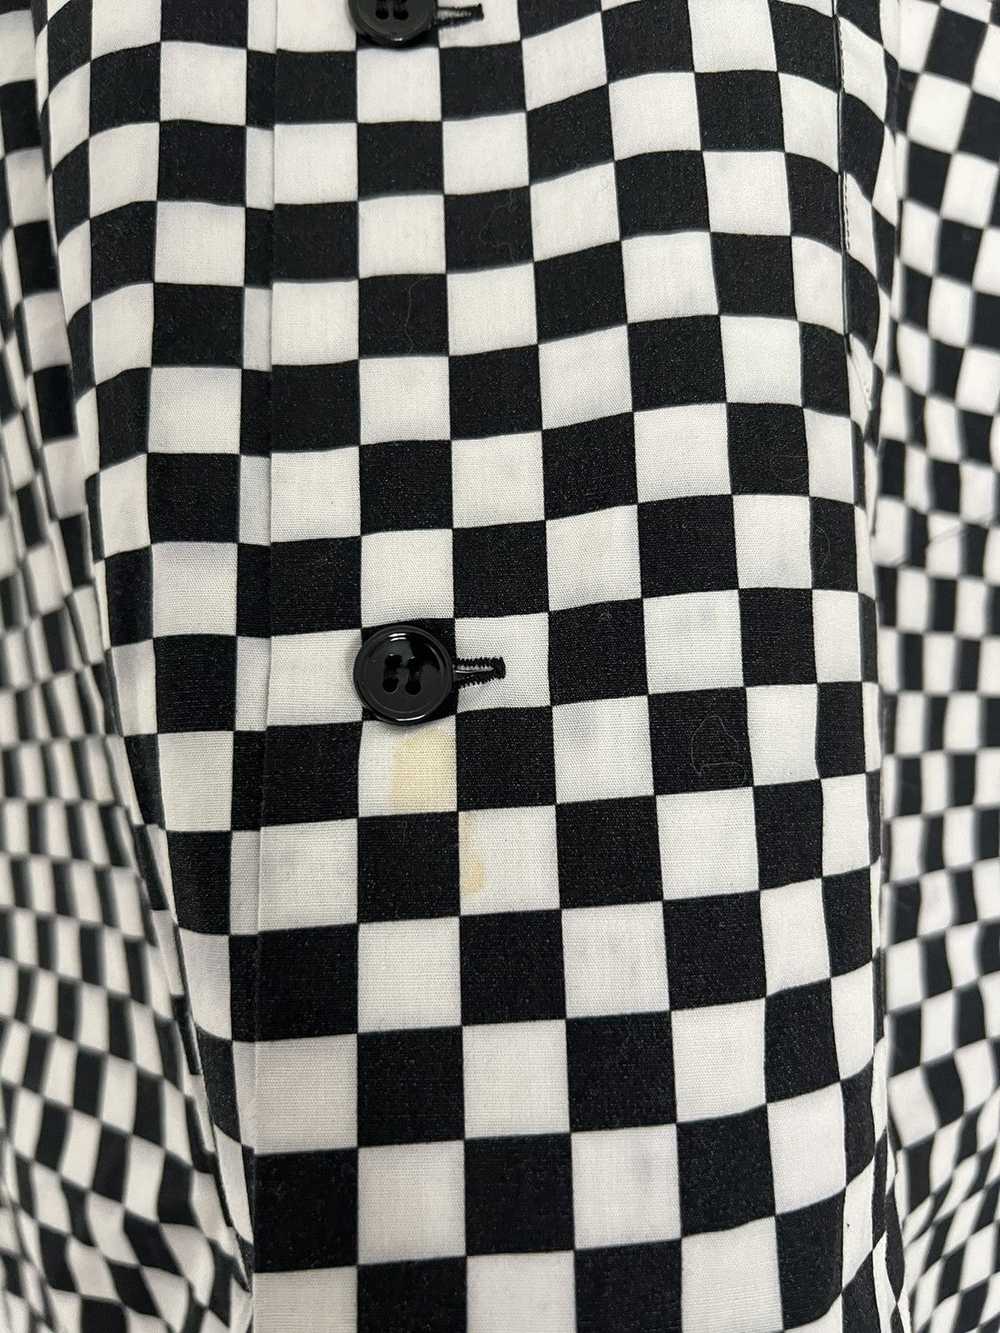 Saint Laurent Paris Checkered shirt - image 4